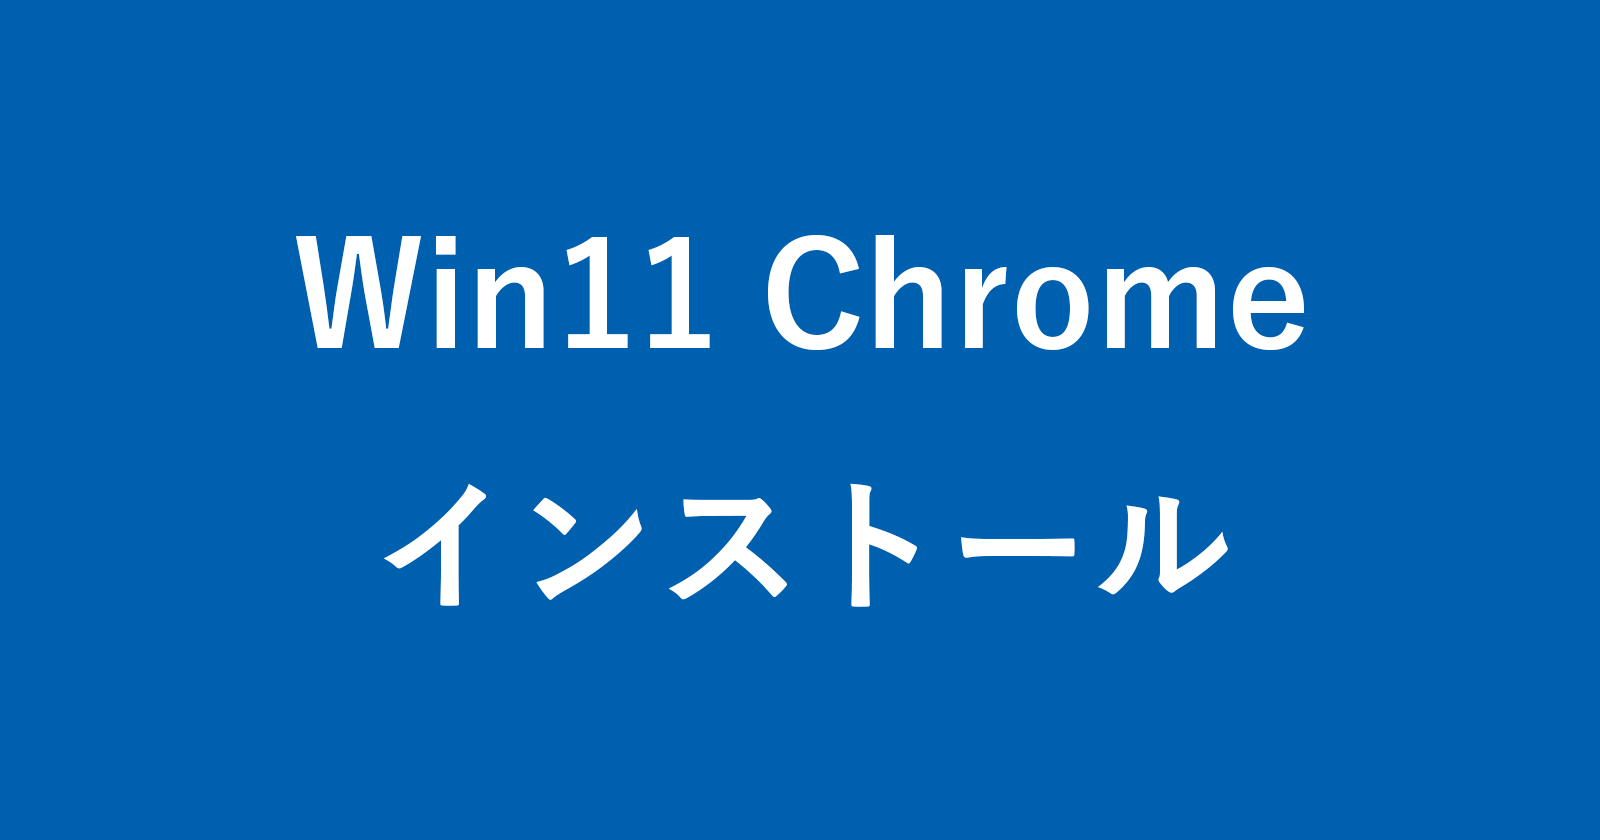 windows 11 chrome install